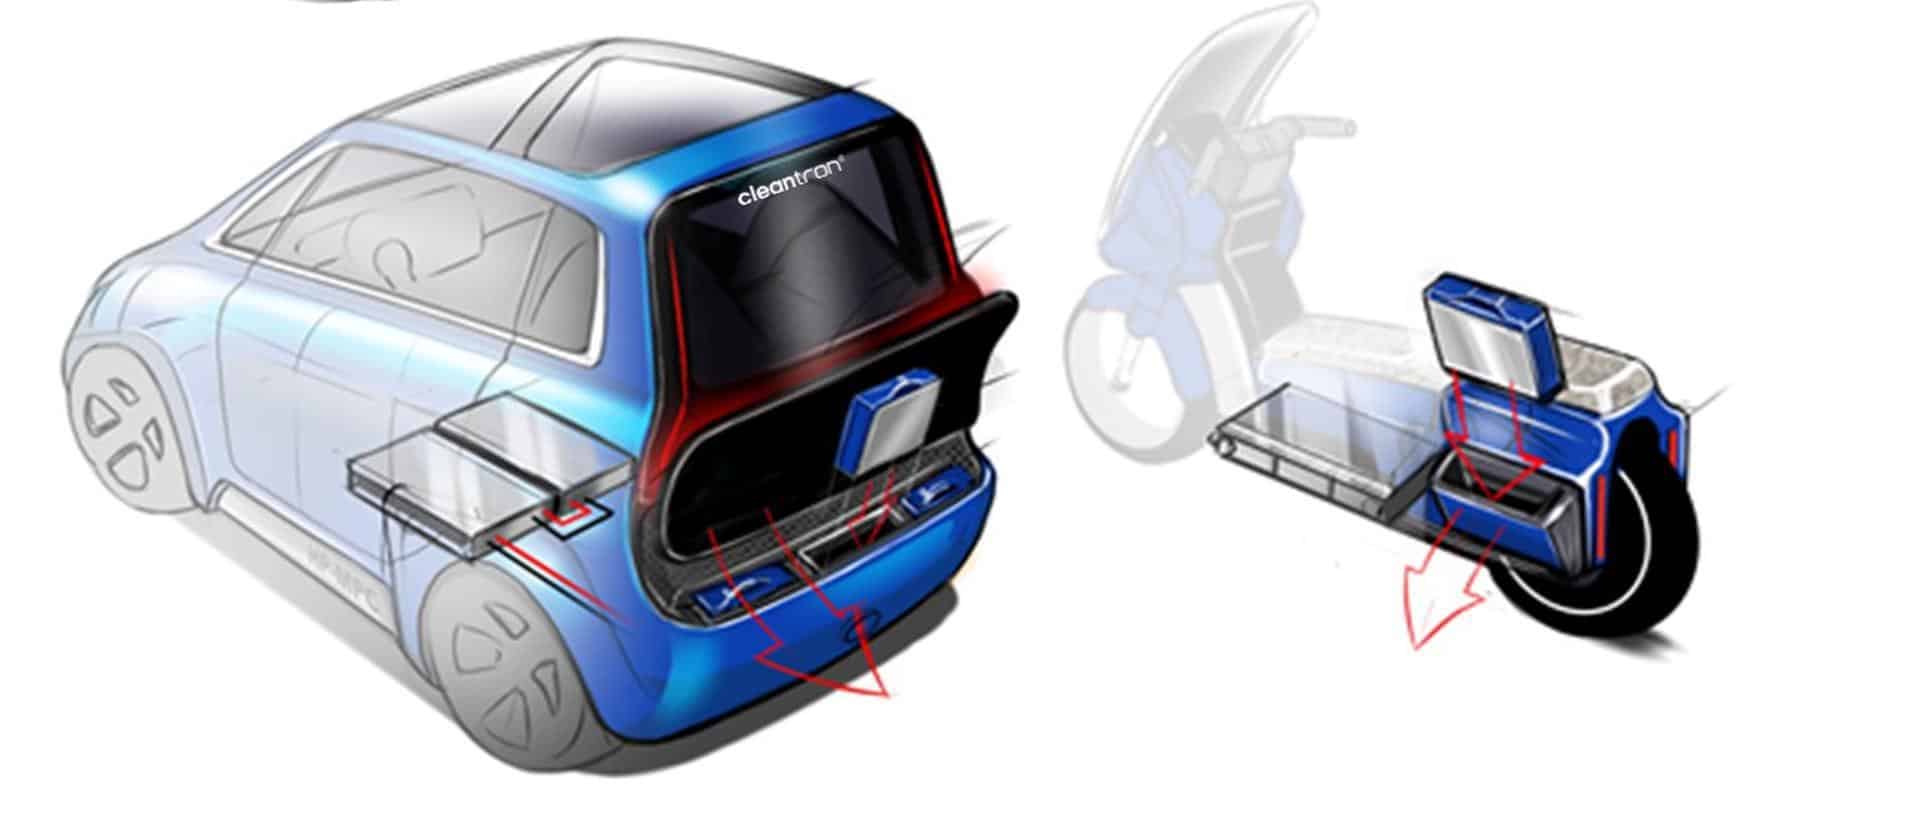 Cleantrons Akku für jedes Fahrzeug: kompakt, günstig & austauschbar